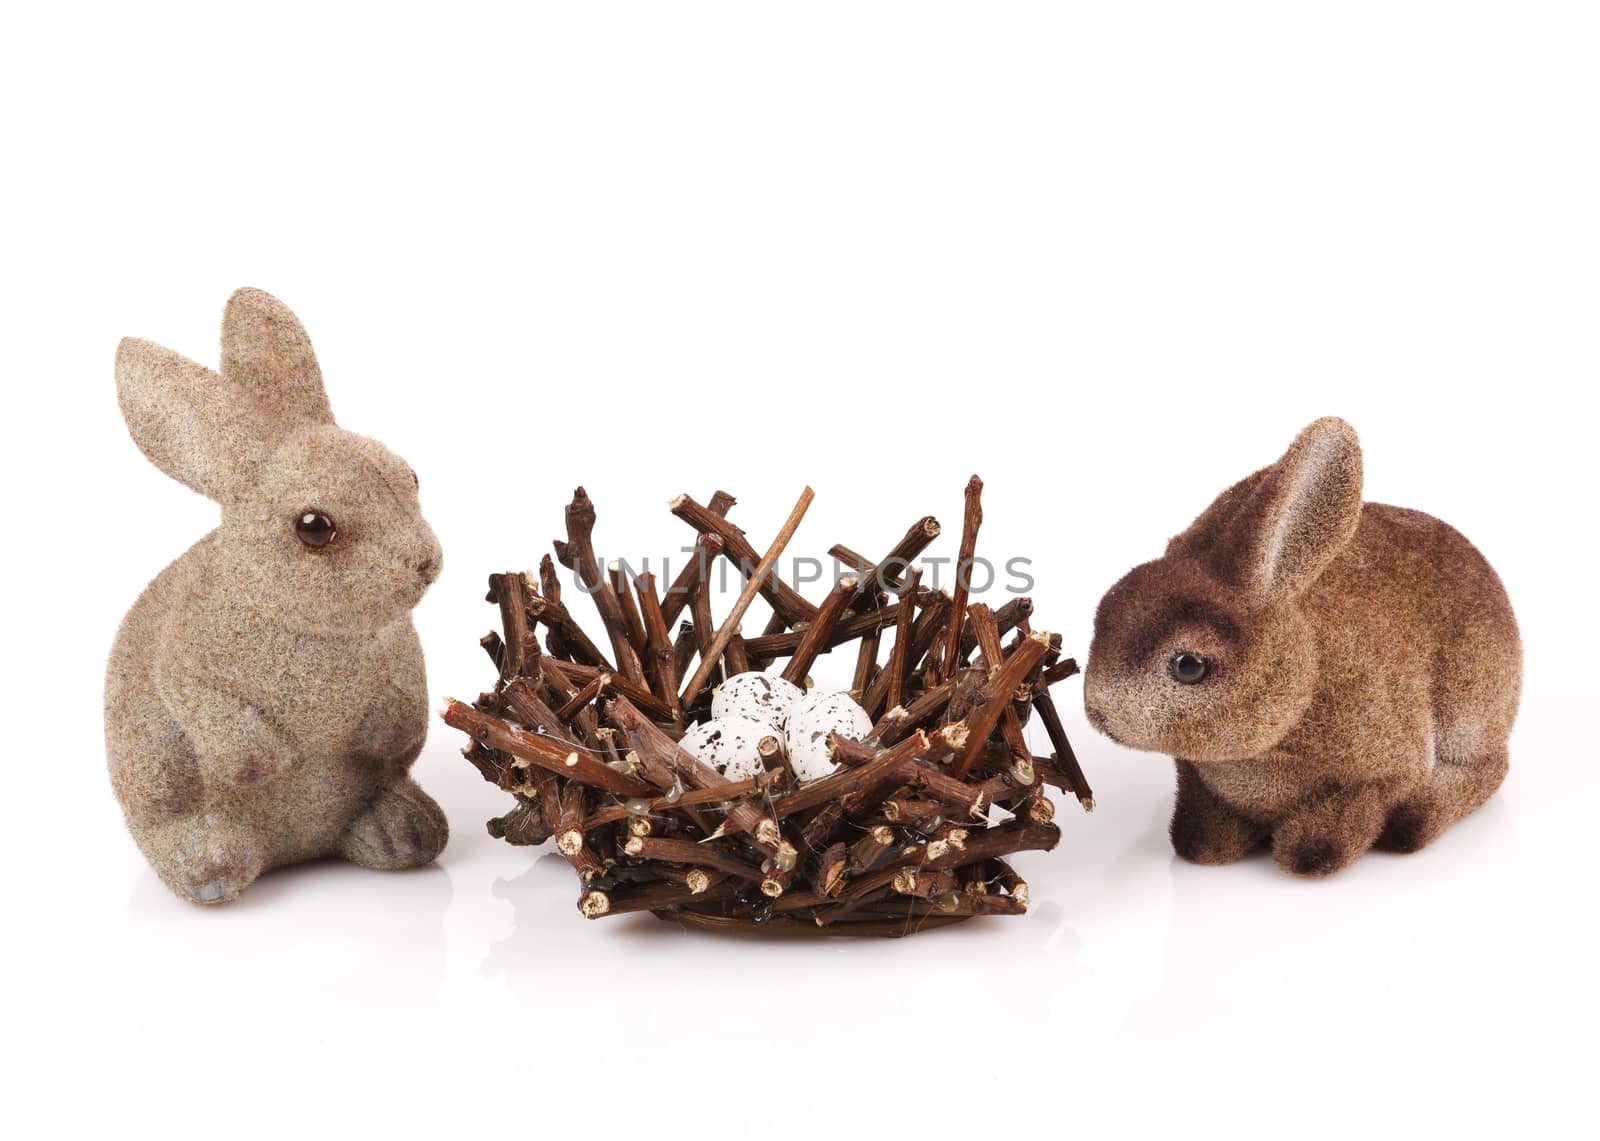 Easter bunnies by serkucher